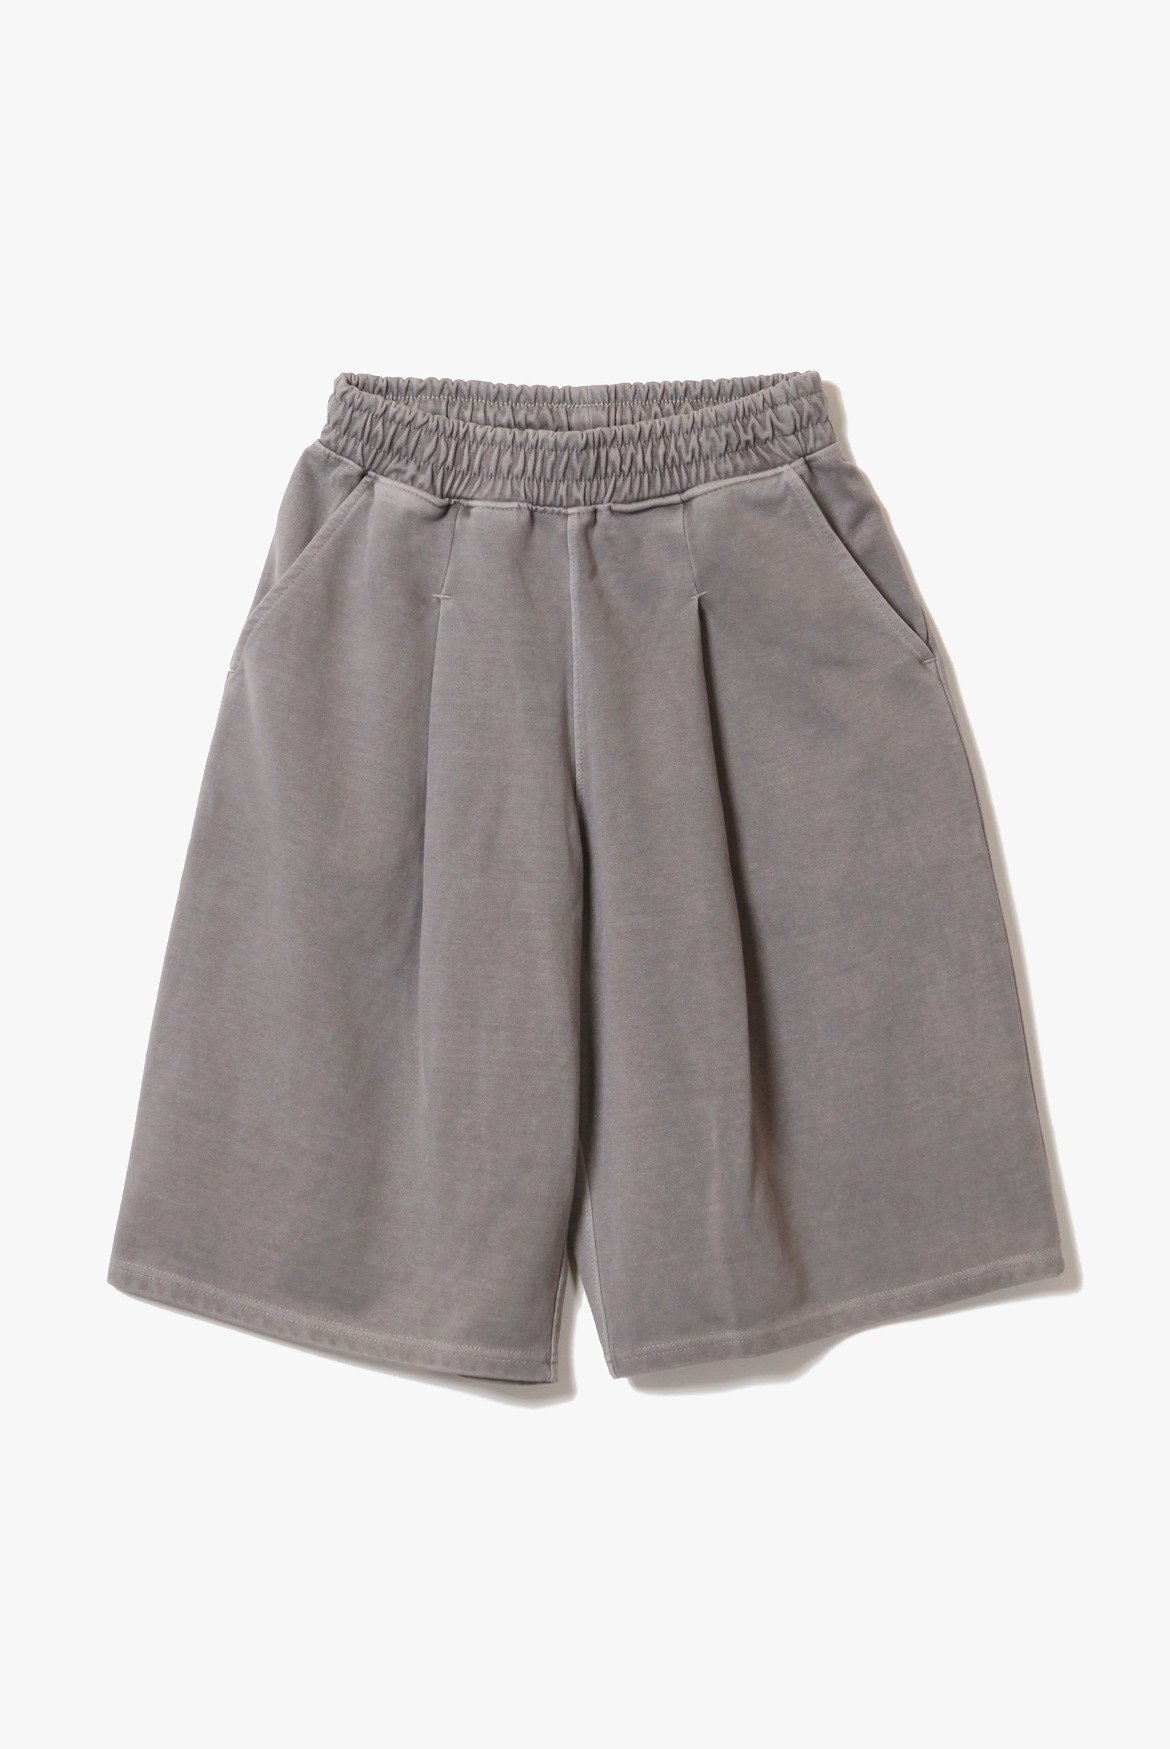 (5월 21일 예약배송) Deep One Tuck Pigment Sweat Shorts [Cement]